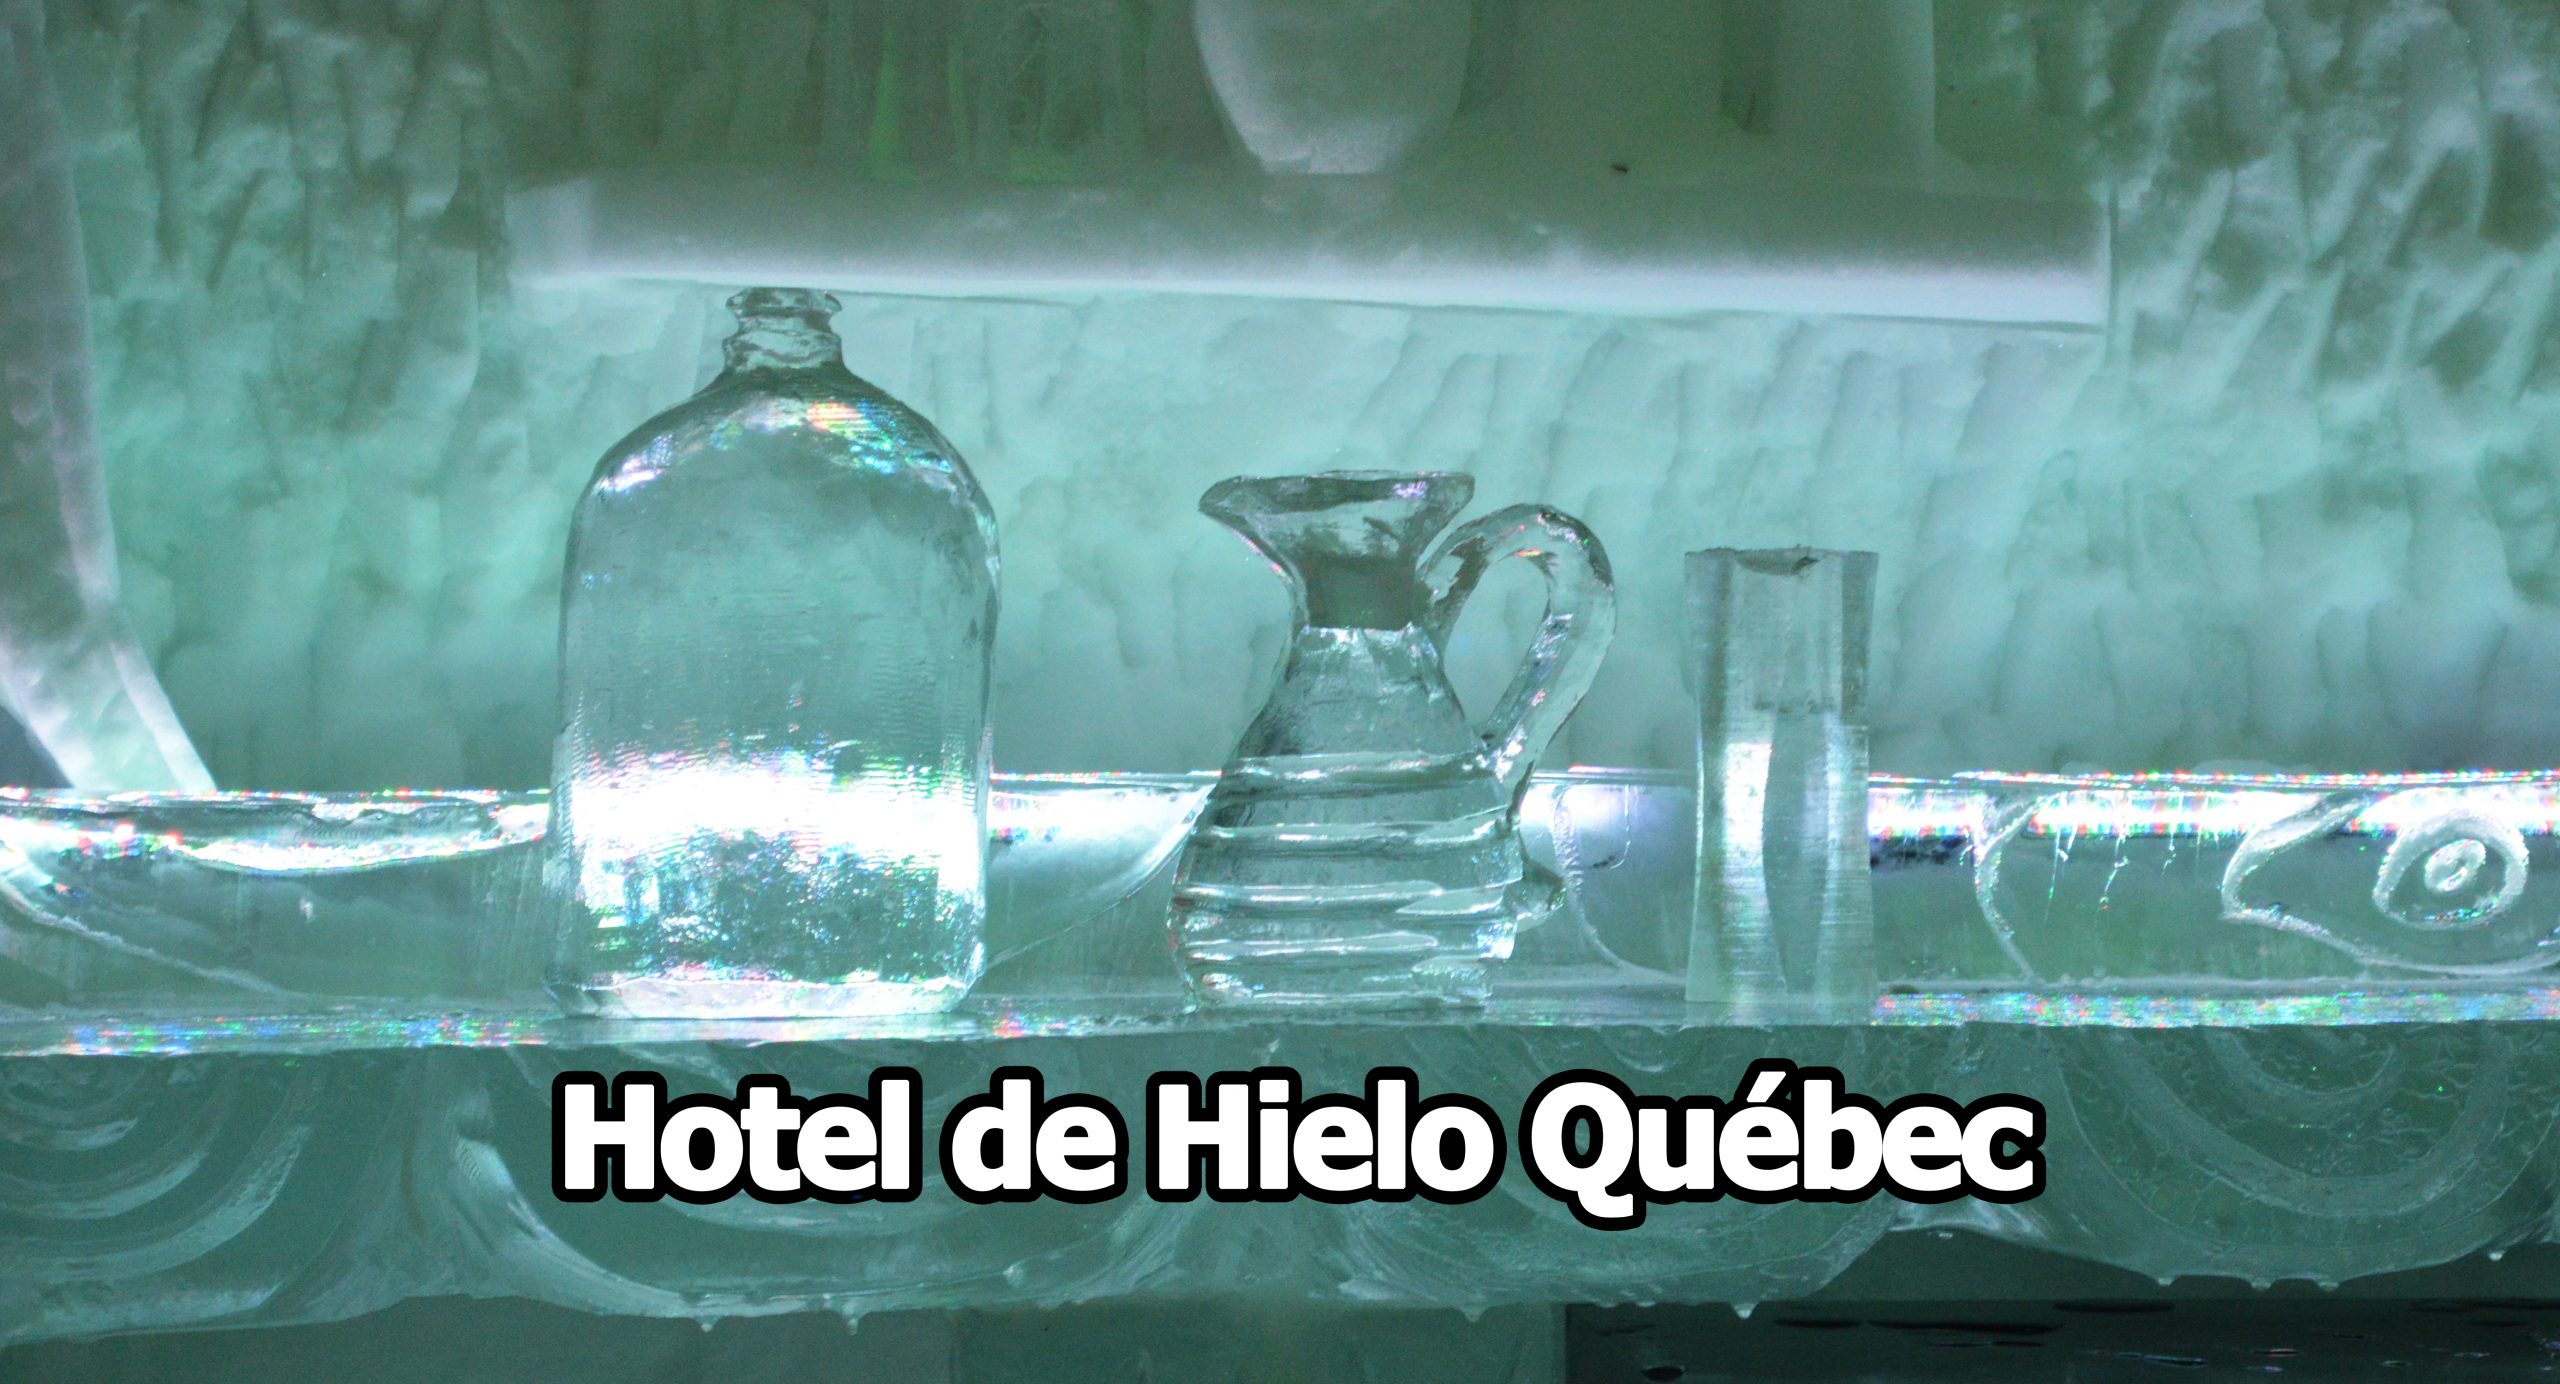 Hotel de Hielo Quebec